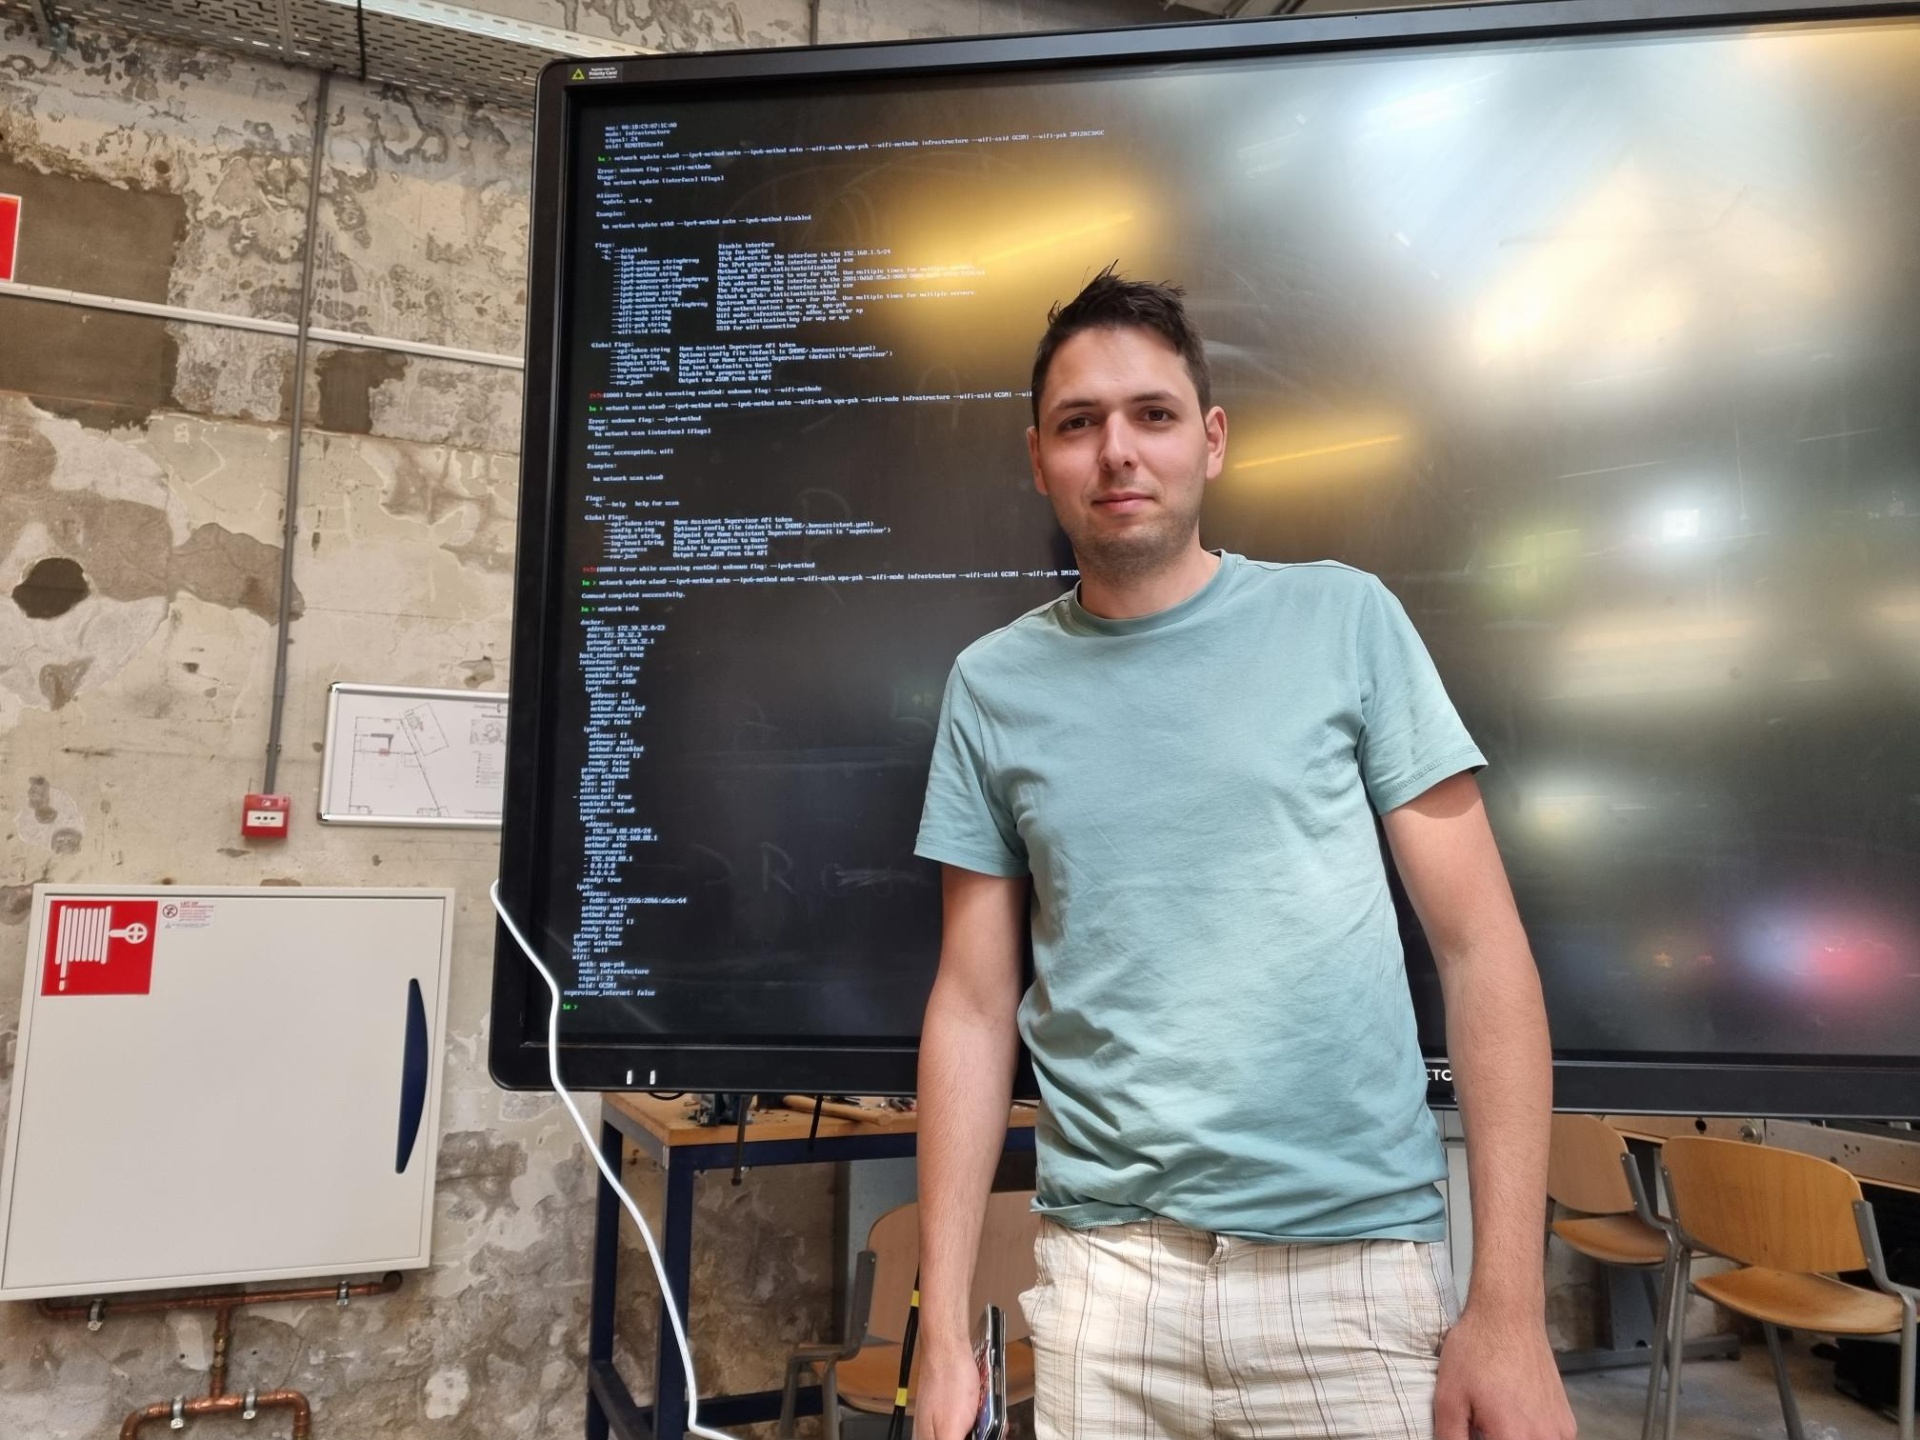 Ein junger Mann steht vor einem großen Bildschirm auf dem die Ausgabe eines Computers angezeigt wird.